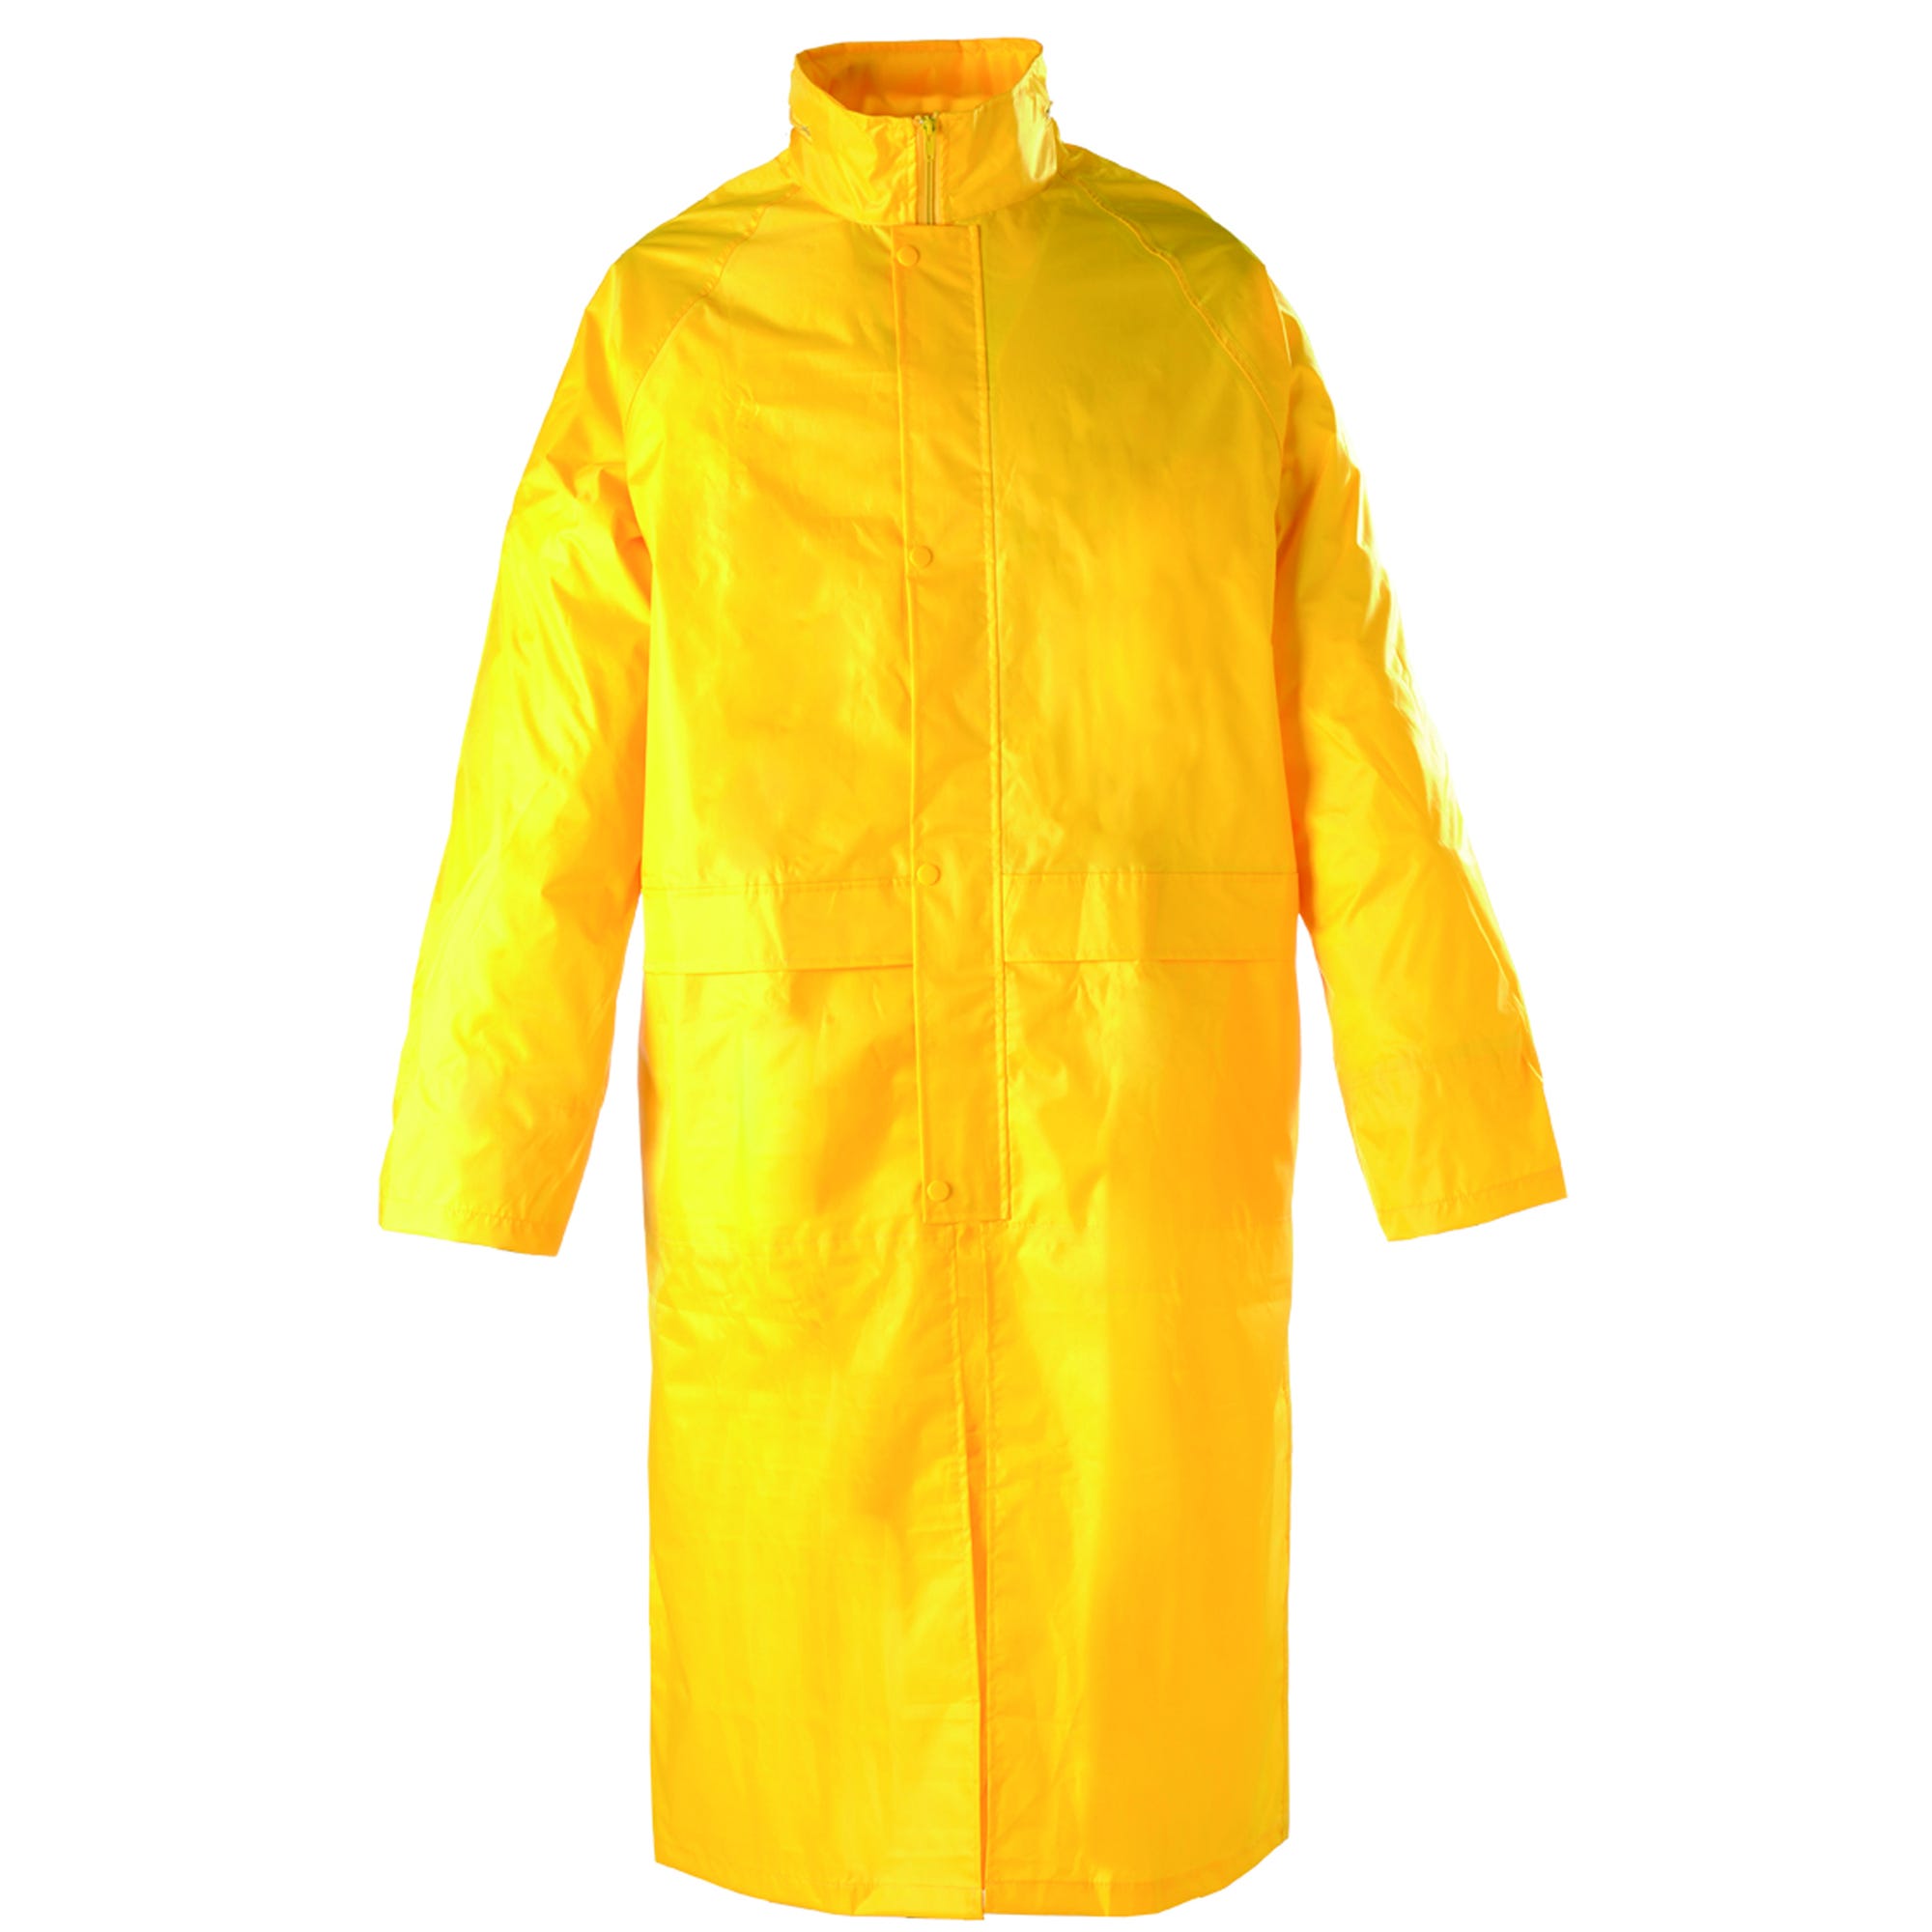 Manteau de pluie PVC, jaune, 185g/m² - COVERGUARD - Taille L 1